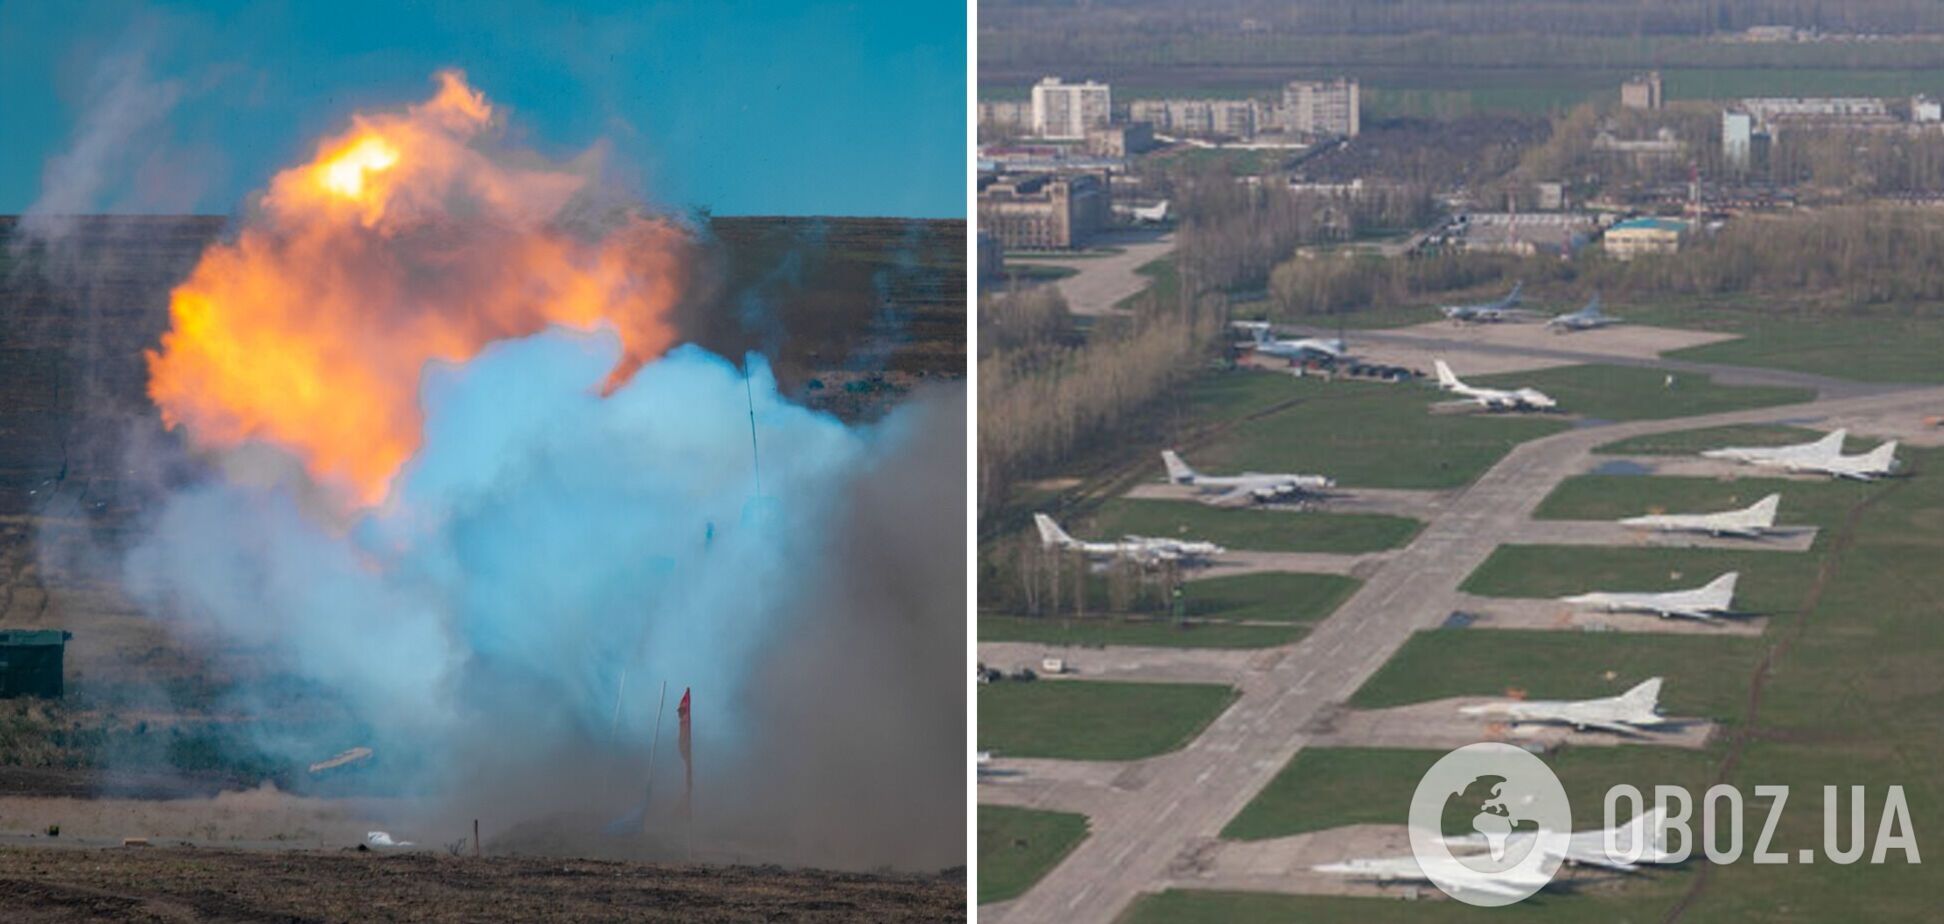 ГУР про вибухи на аеродромах в Енгельсі і біля Рязані: за все, що відбувається на території РФ, відповідає російський уряд  